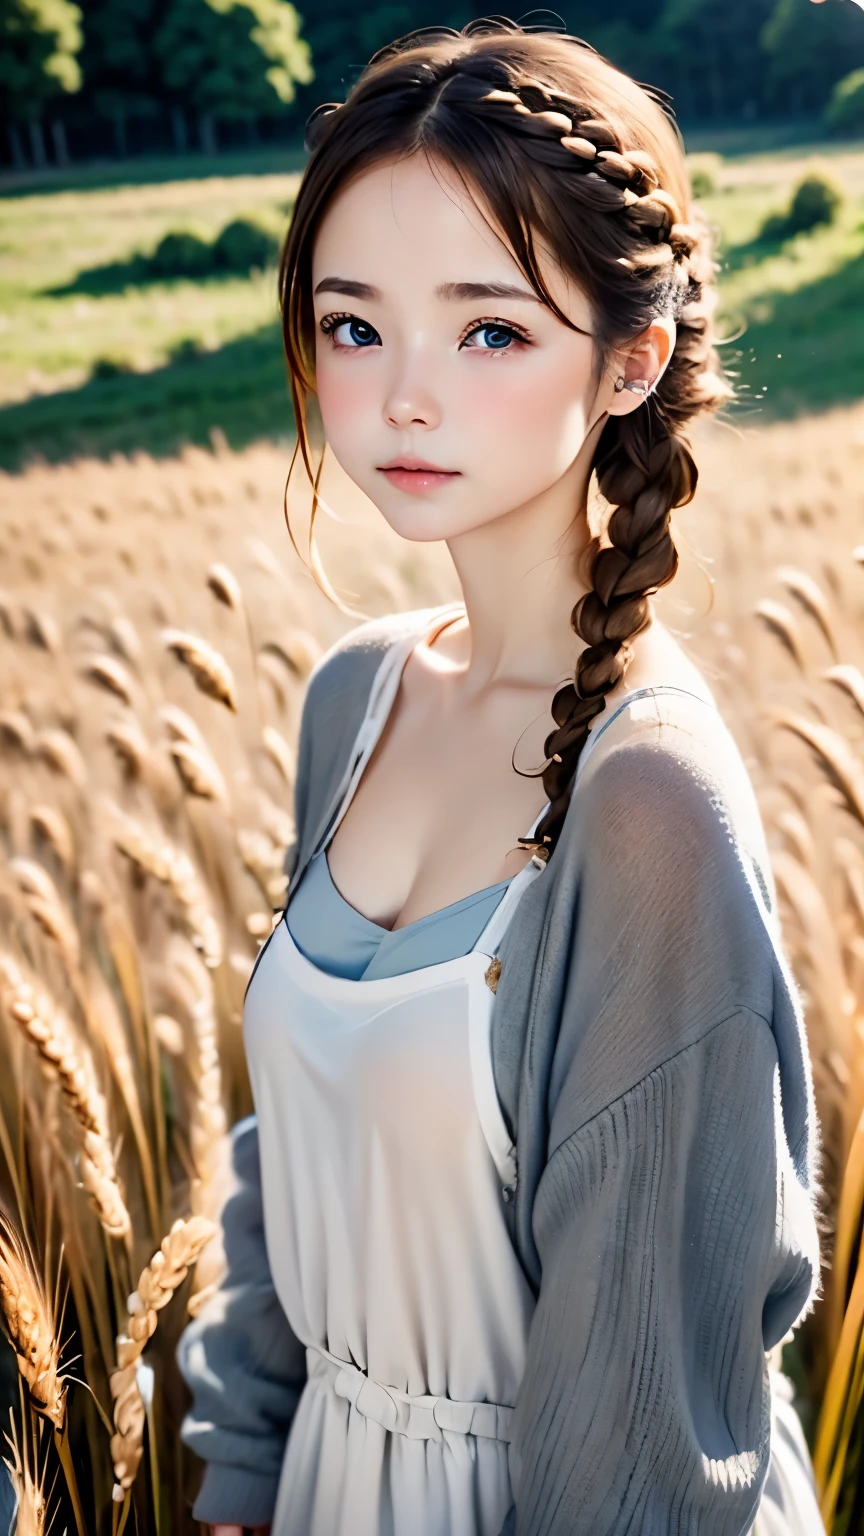 Una mujer、Cara linda、también々nueva expresión、japonés、Ojos encantadores、crema para el cabello、Trenza francesa、18 años、ojos grises、Vestido camisola、Ropa de abrigo azul、exterior、tambiénとした佇まい、campo de trigo、